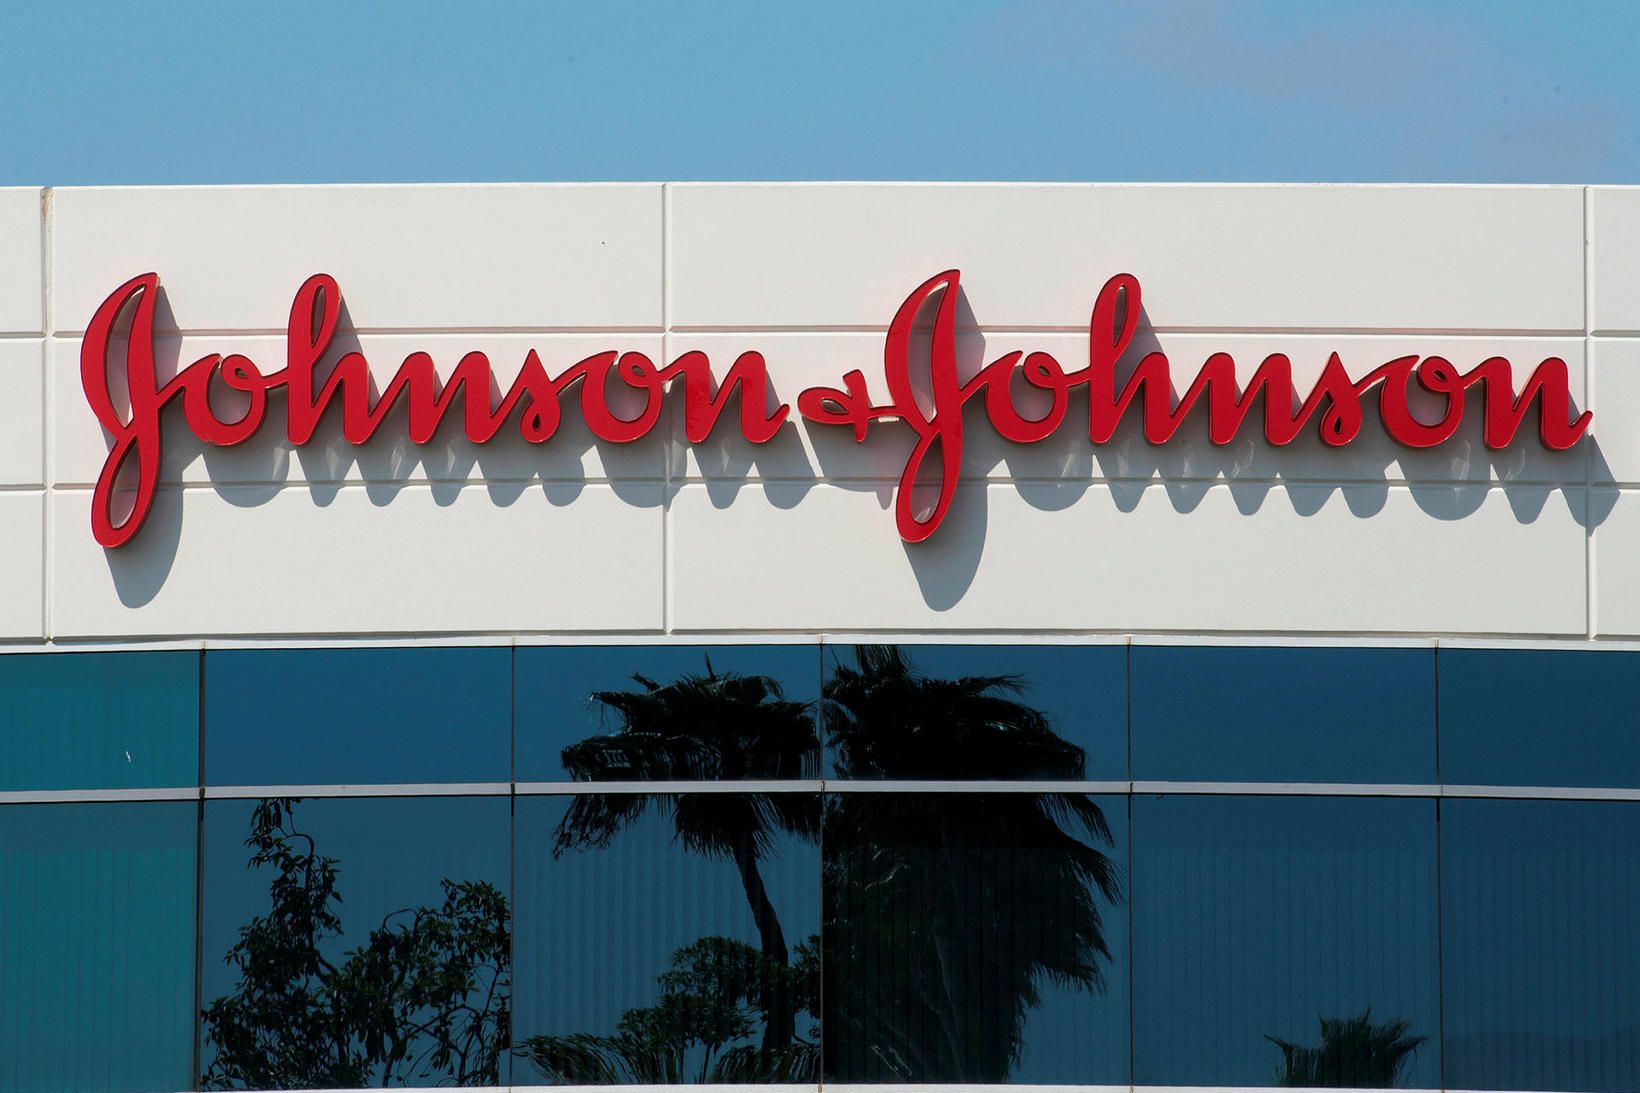 Johnson & Johnson er eitt fyrirtækjanna í bóluefnakapphlaupinu.